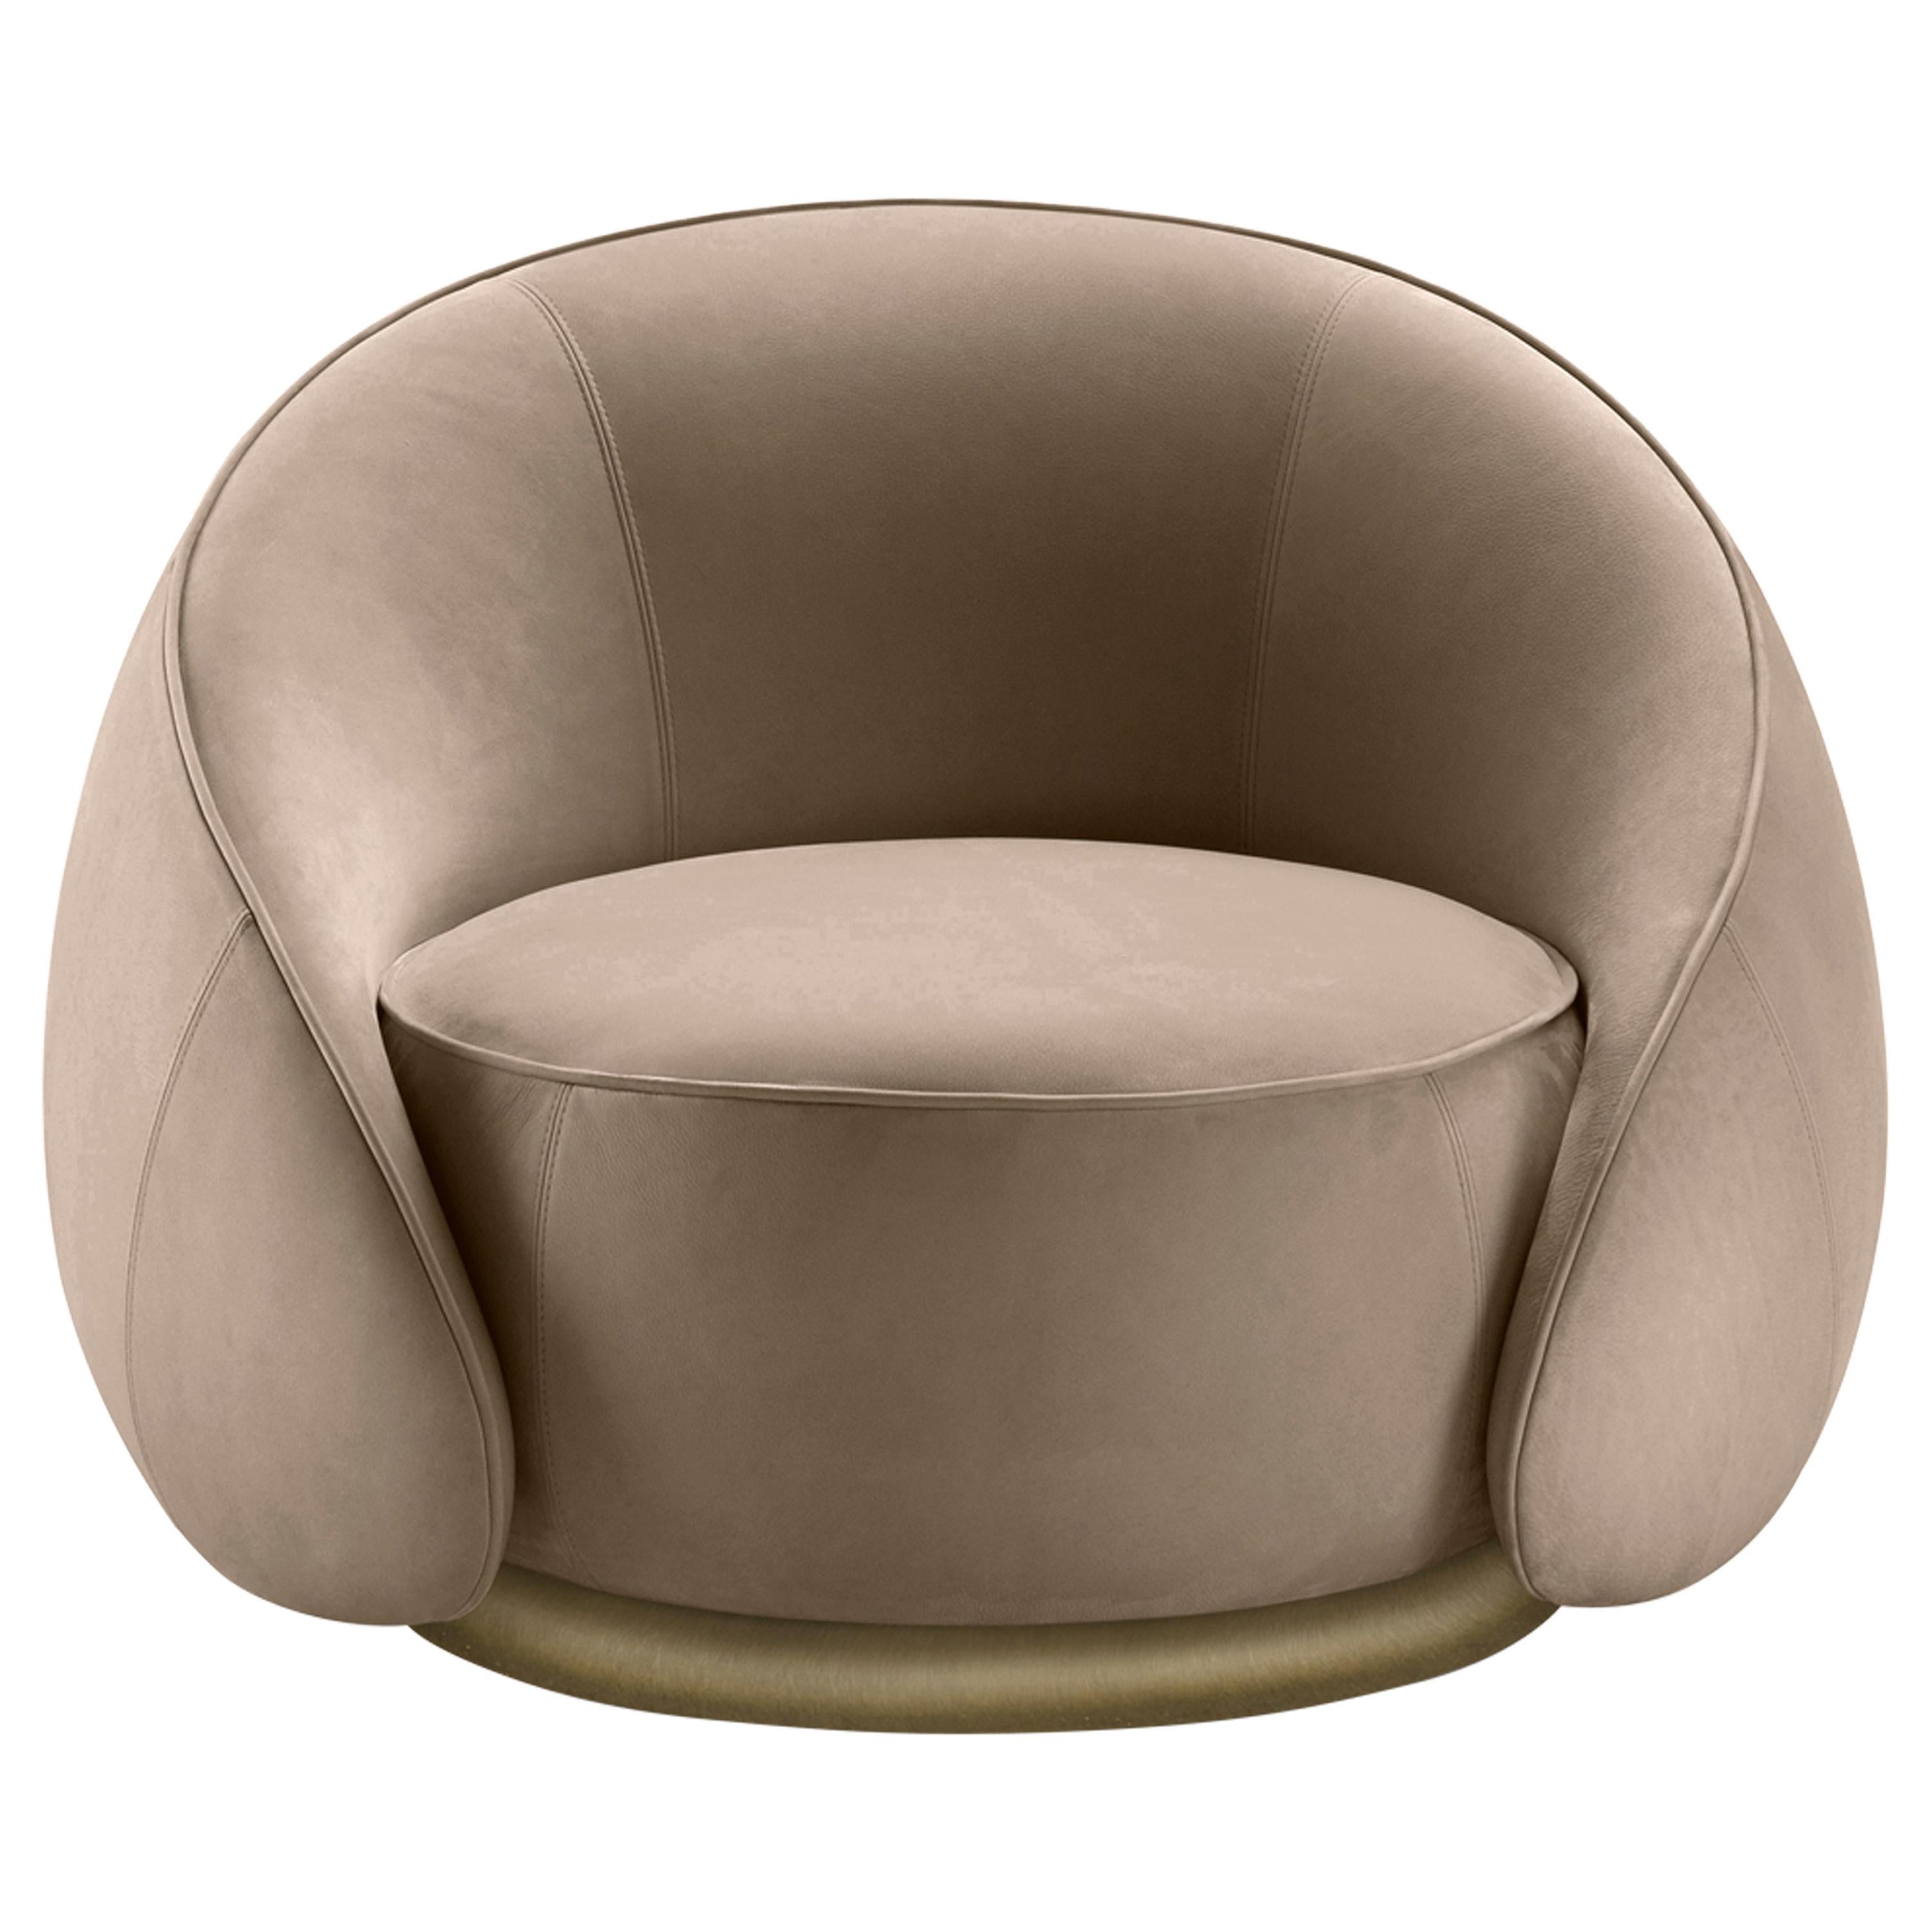 Abbracci-Sessel aus beigem Leder mit braunen Beinen aus brüniertem Messing